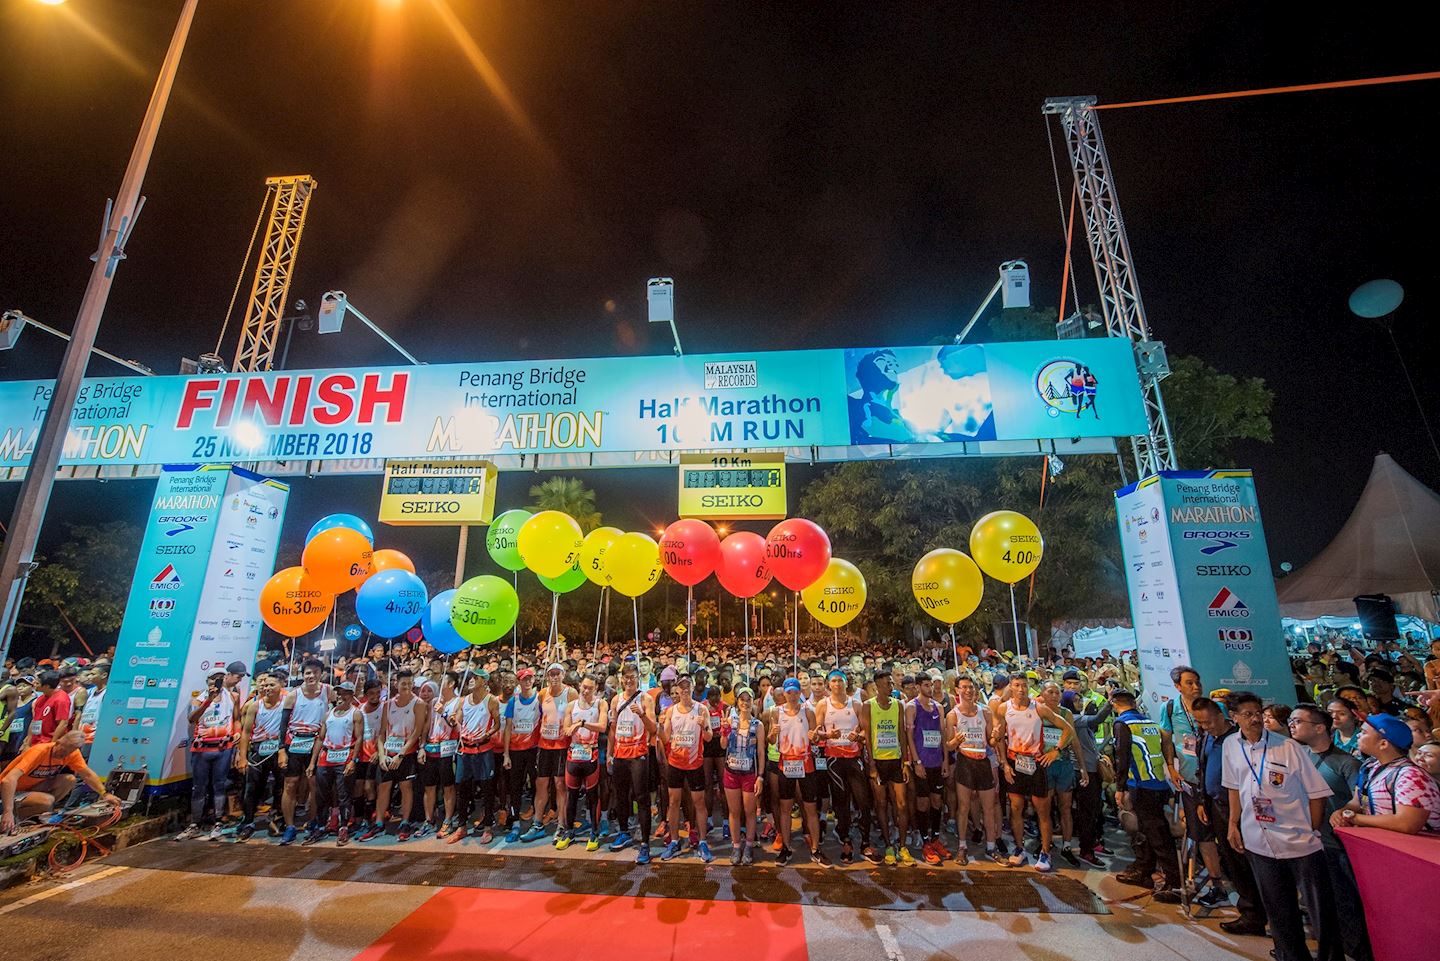 Penang Bridge International Marathon 